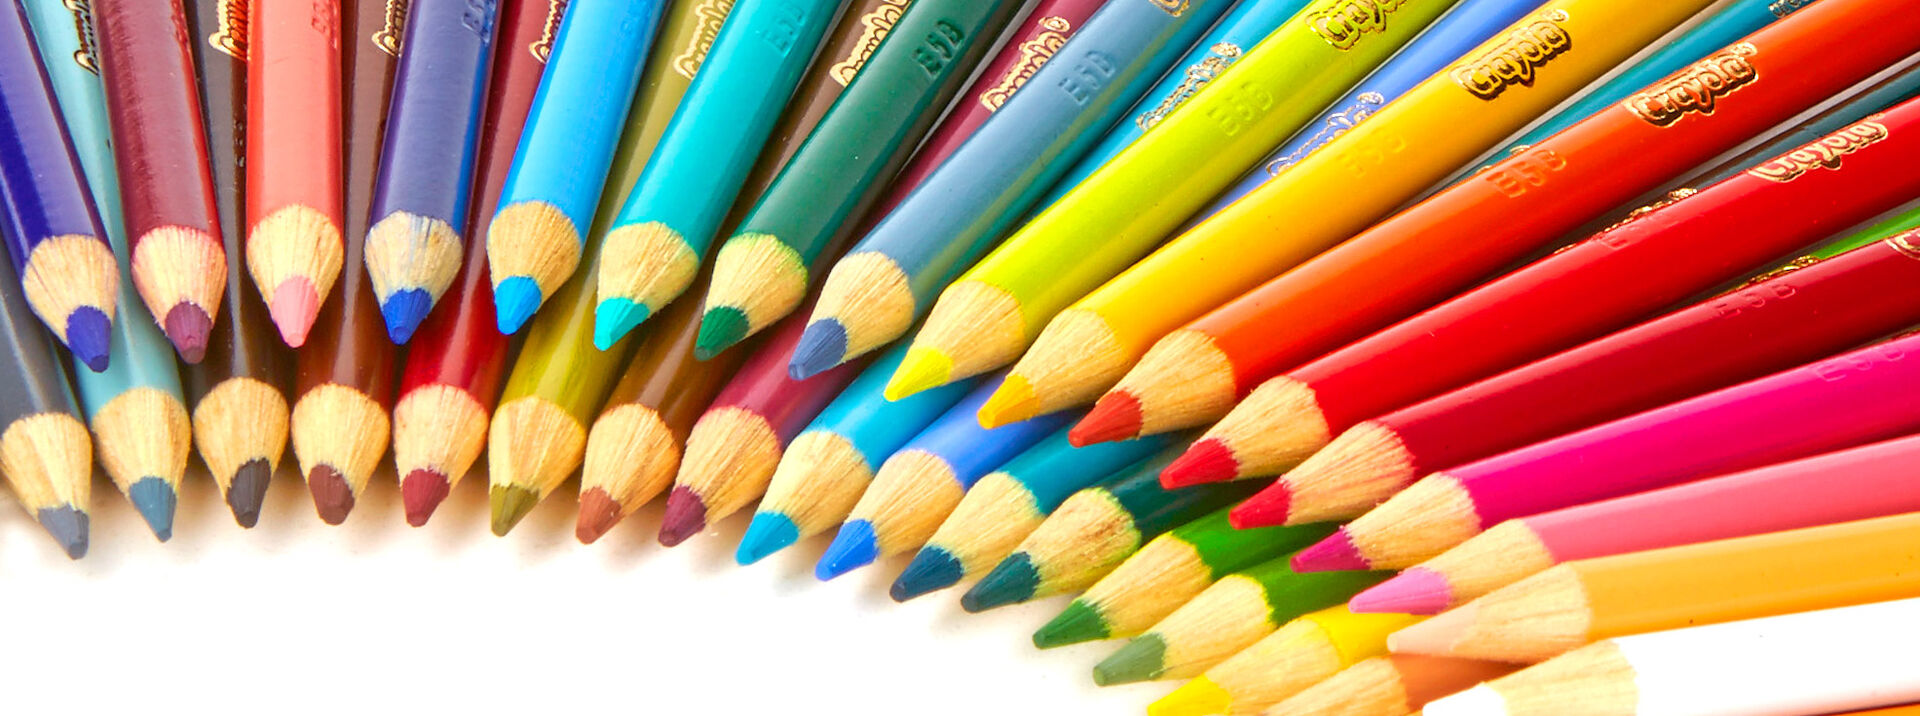 Crayola Colored Pencils - Shop Colored Pencils | Crayola | Crayola